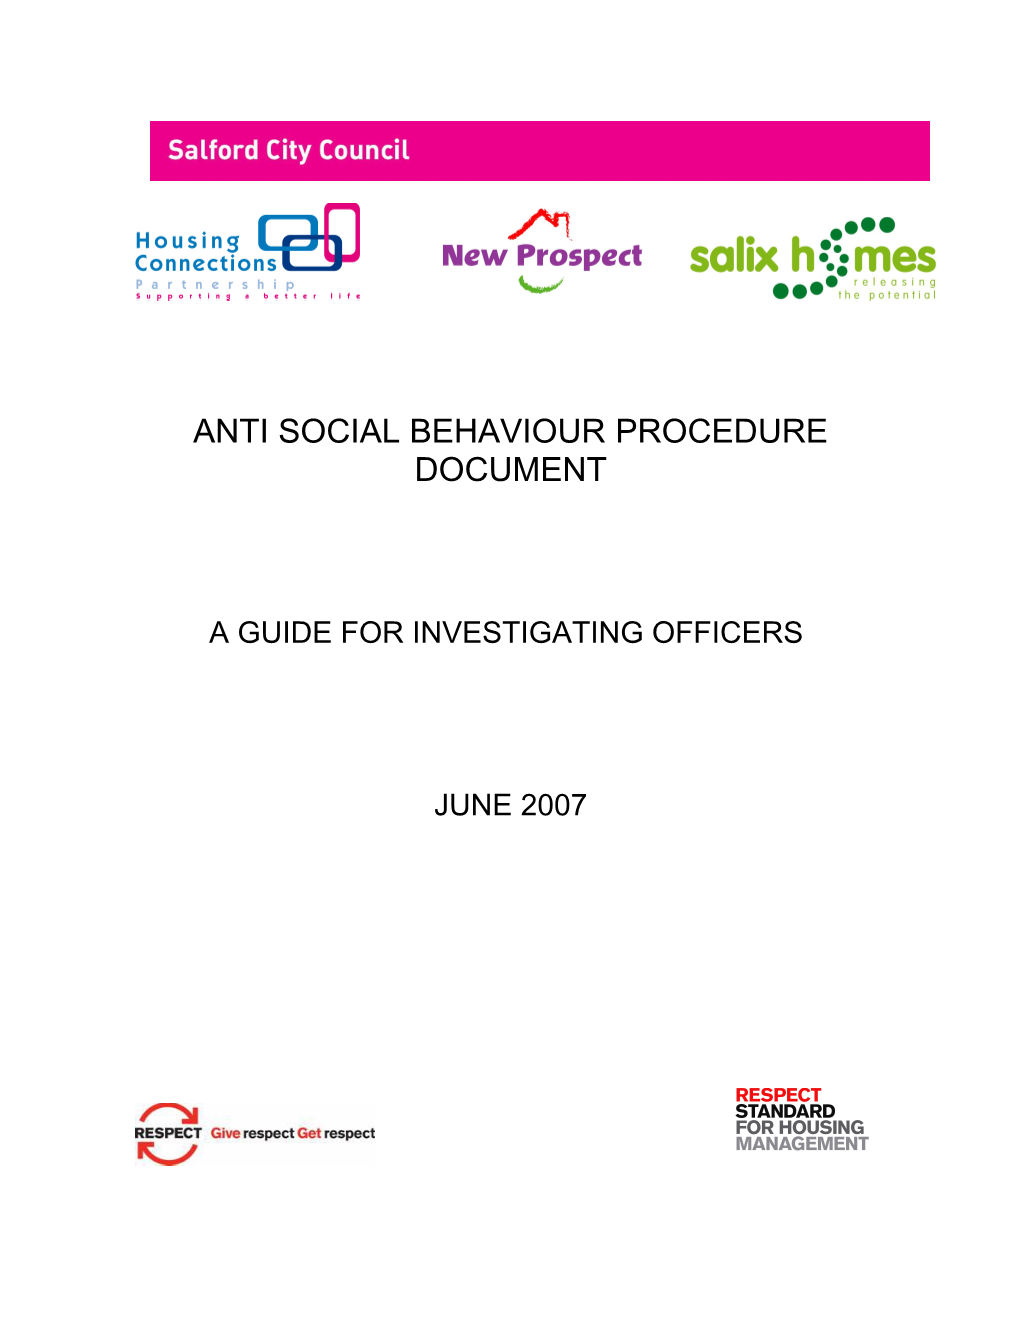 Anti Social Behaviour Procedure Document